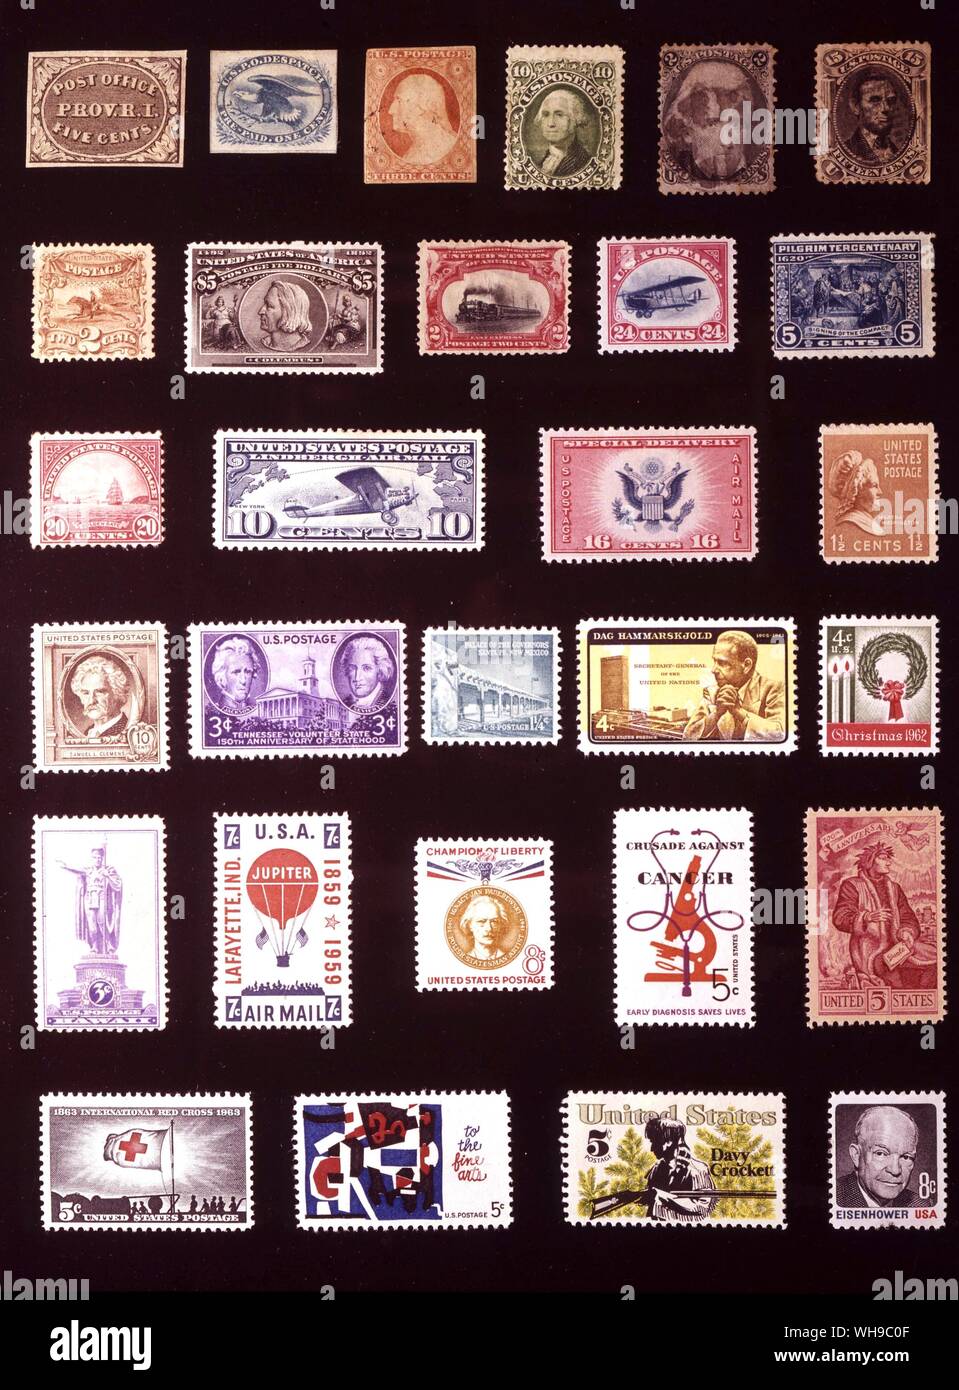 AMERICA - STATI UNITI D'AMERICA: (da sinistra a destra) 1. La provvidenza, Postmaster il problema, 5 centesimi, 1846, 2. U.S.P.O. Spedizione, 1 cent, 1851, 3. 3 centesimi, 1851, 4. 10 centesimi, 1861, 5. 2 centesimi, 1863, 6. 15 centesimi, 1866, 7. 2 centesimi, 1869, 8. 5 dollari, 1893, 9. 2 centesimi, 1901, 10. 24 centesimi, 1918, 11. 5 centesimi, 1920, 12. 20 centesimi, 1923 13. 10 centesimi, 1927, 14. 16 centesimi, 1936, 15. 1.5 centesimi, 1938, 16. 10 centesimi, 1940, 17. 3 centesimi, 1946, 18. 1,25 centesimi, 1960, 19. 4 centesimi, 1962, 20. 4 centesimi, 1962, 21. 3 centesimi, 1937, 22. 7 centesimi, 1959, 23. 8 centesimi, 1960, 24. 5 centesimi, 1965, 25. 5 centesimi, 1965, 26. 5 centesimi, Foto Stock